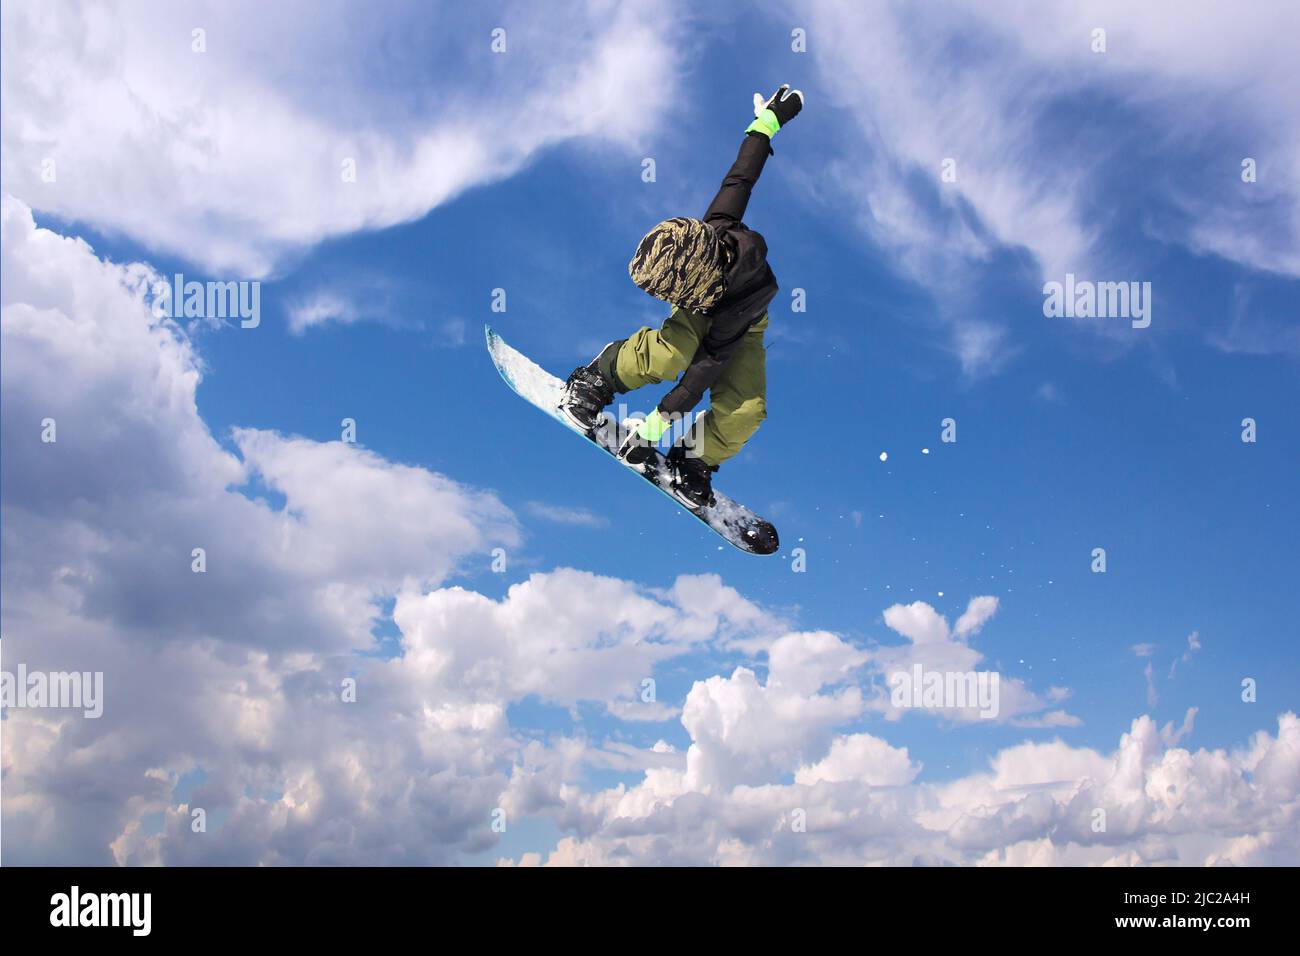 Snowboarder in Aktion, springen gegen blauen Himmel Stockfoto